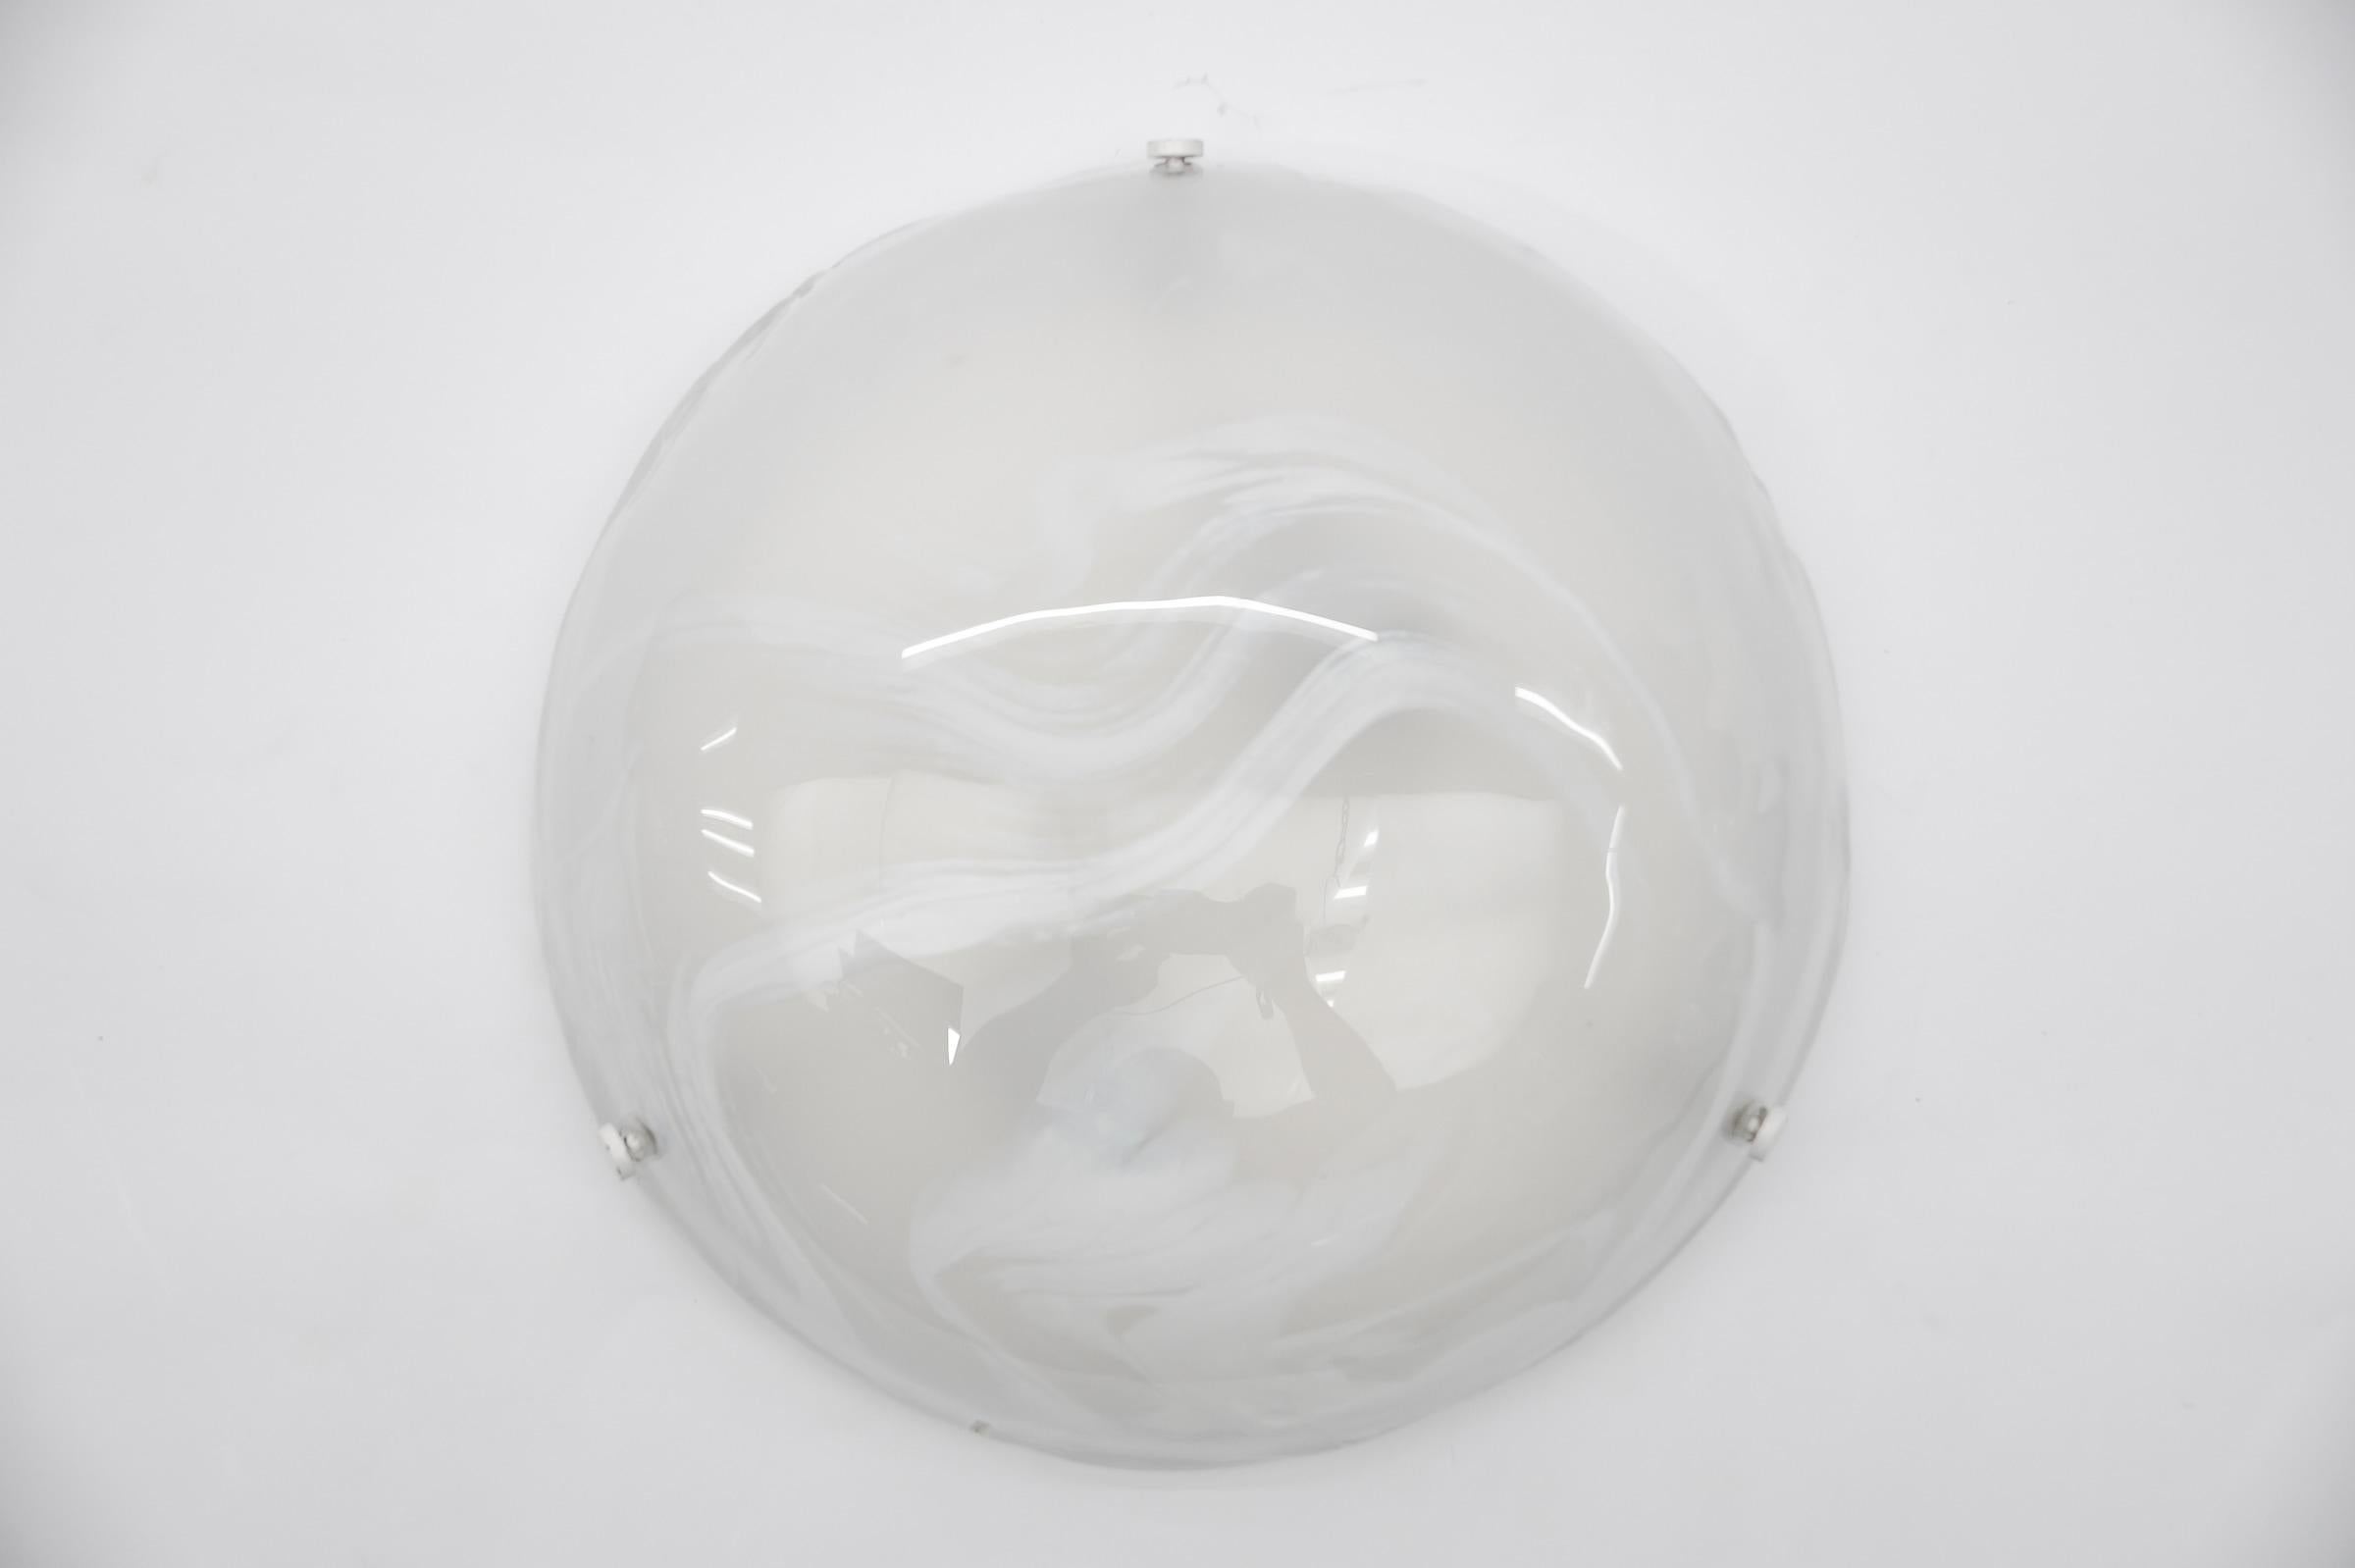 Weiße Muranoglas-Einbauleuchte von Hillebrand, Deutschland 1960er Jahre,

Abmessungen
Höhe: 11 cm (4,33 Zoll)
Durchmesser: 35 cm (13,77 Zoll)

Die Leuchte benötigt 2 x E27 Standard-Glühbirnen mit max. 60W.

Glühbirnen sind nicht enthalten.
Es ist